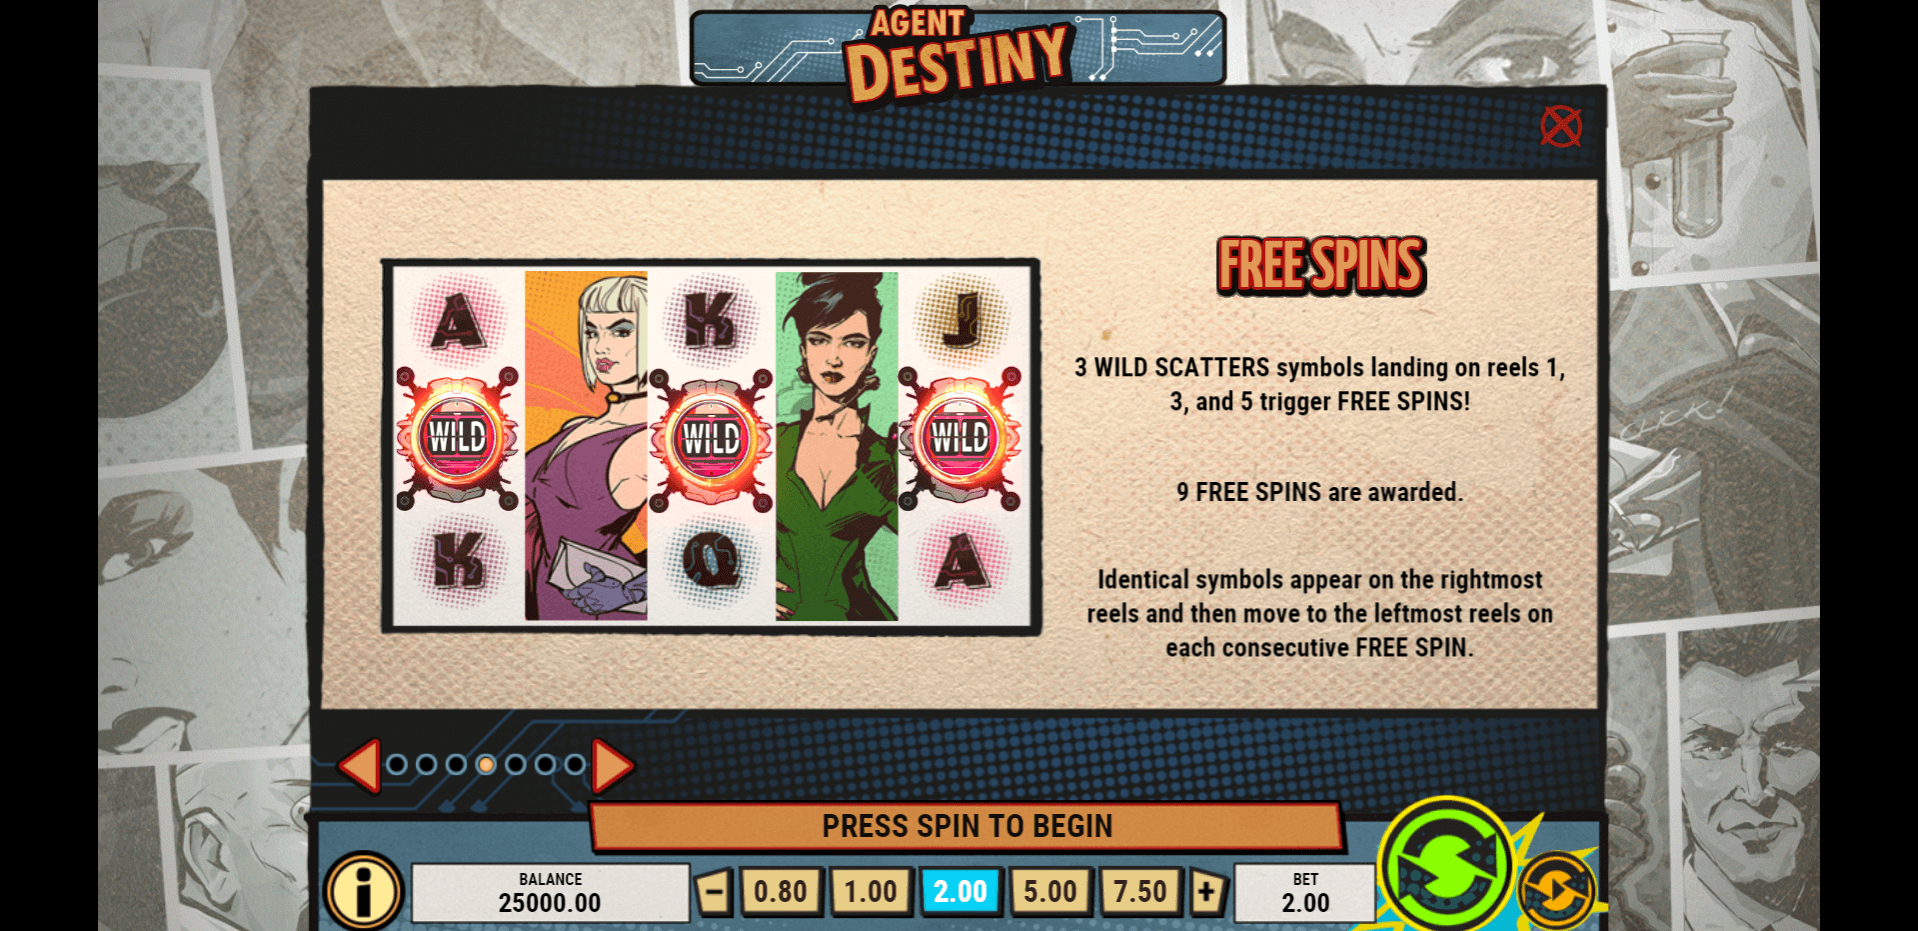 agent destiny slot machine detail image 3